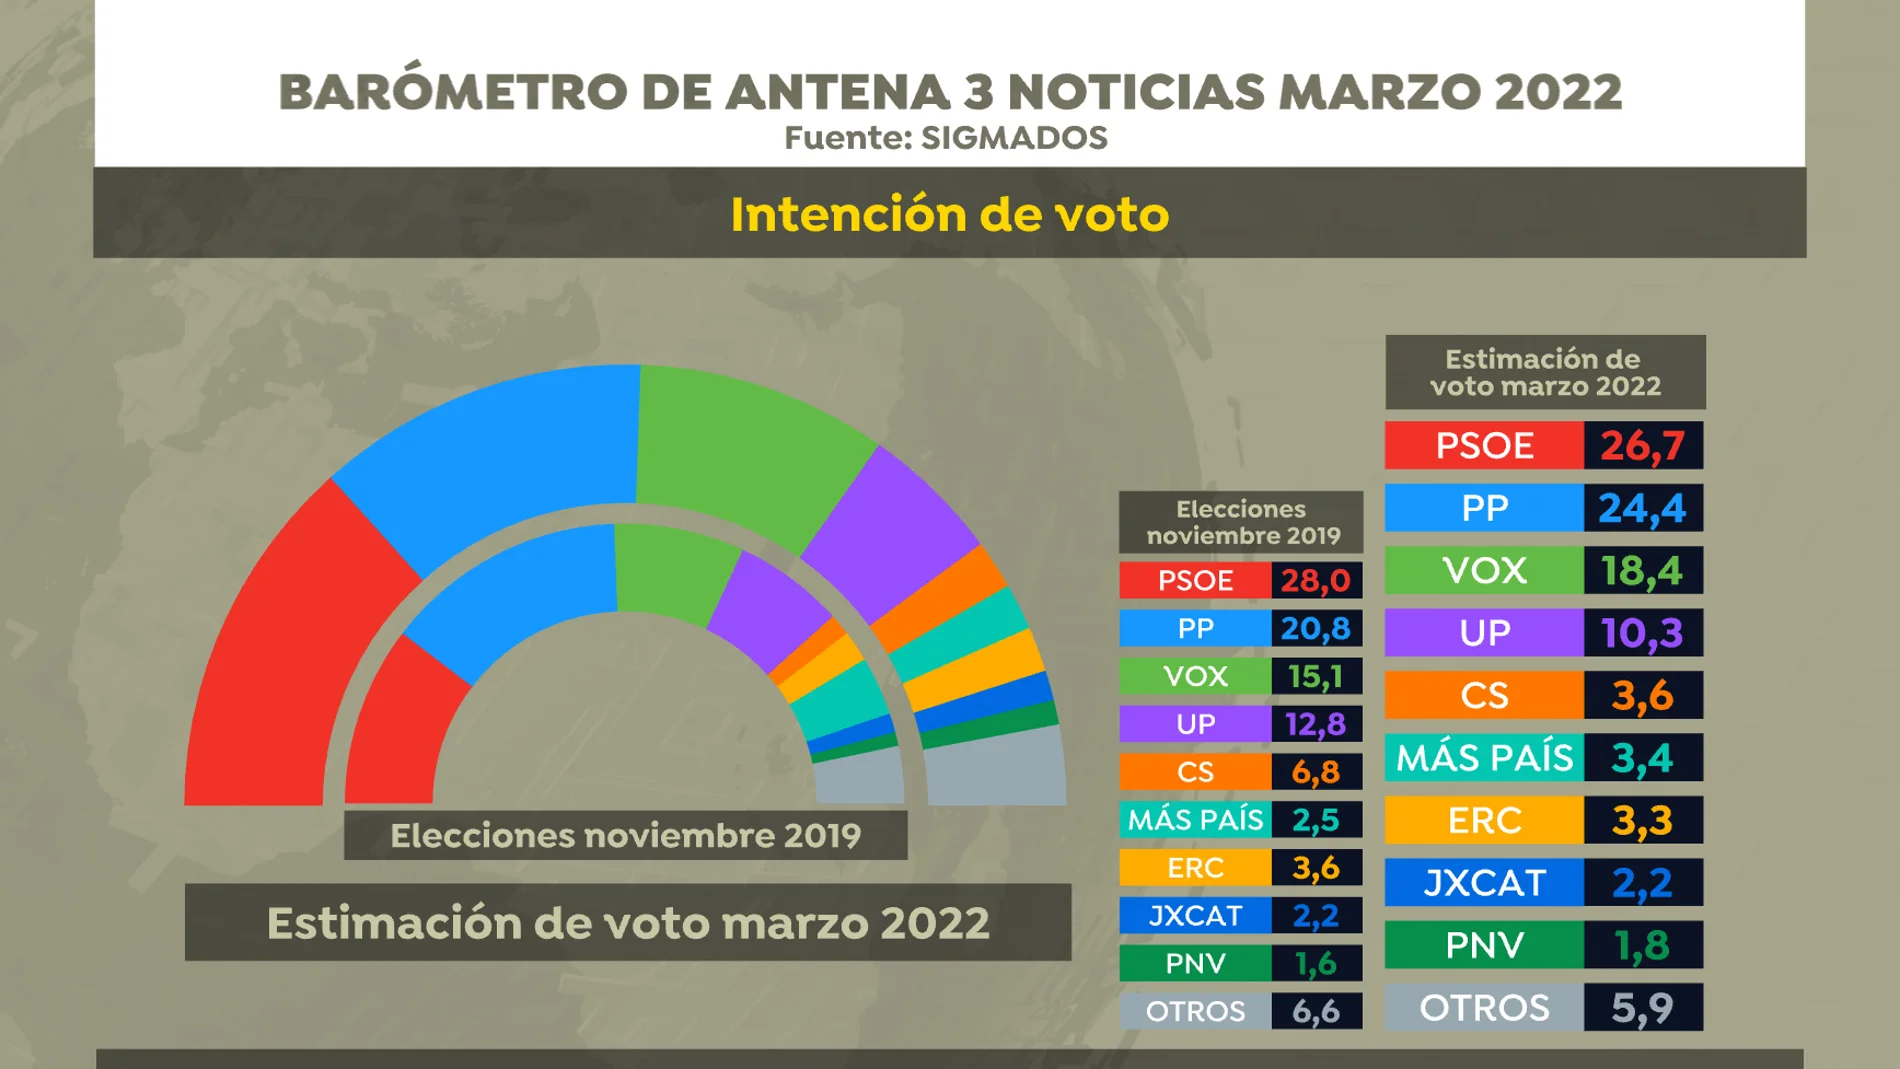 Intención de voto según el barómetro de las elecciones de Antena 3 Noticias en marzo de 2022